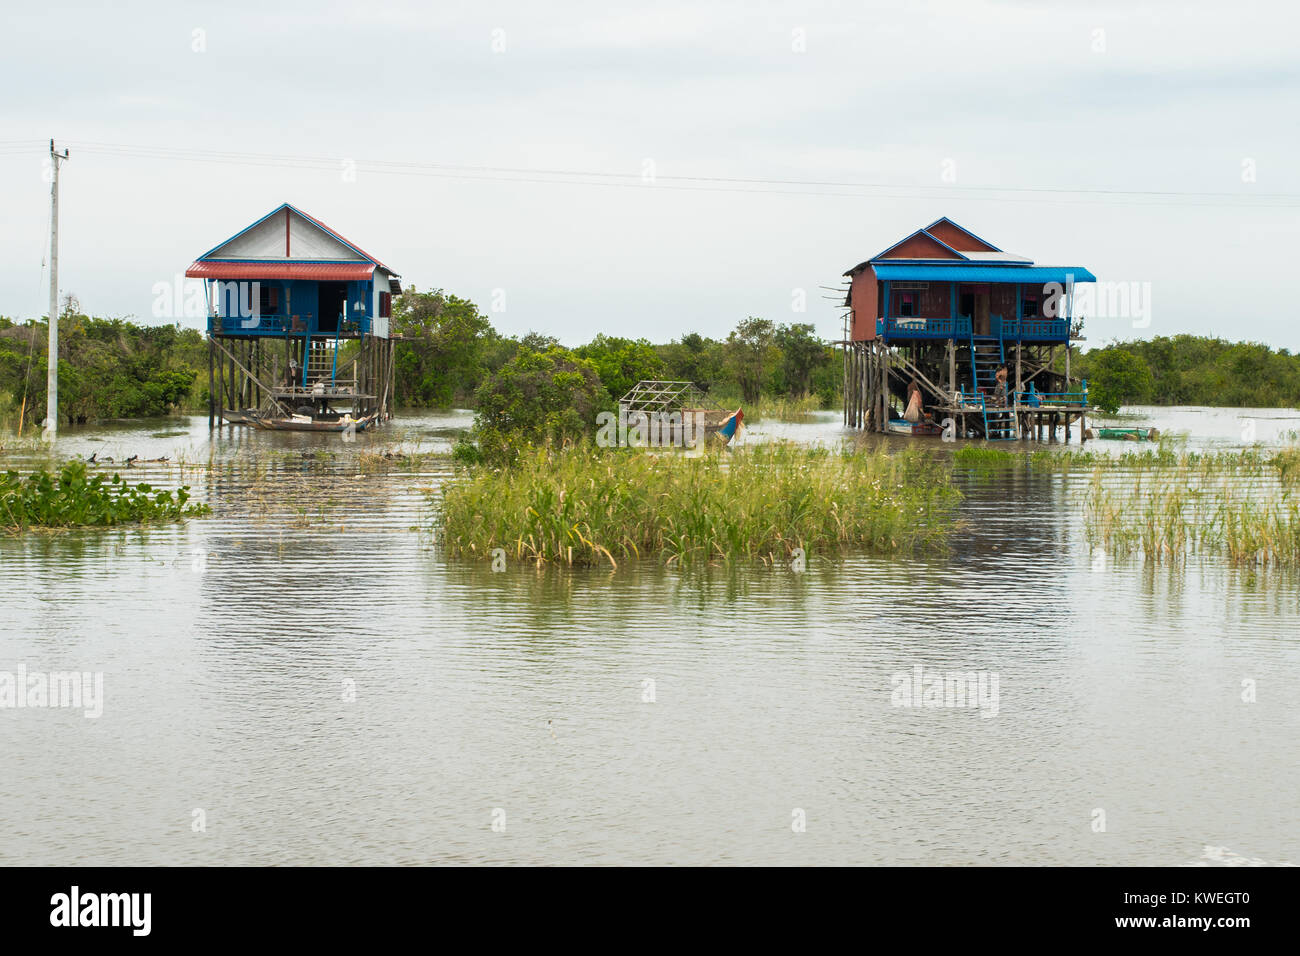 Deux maisons en bois et en métal bleu, construit sur pilotis, flottant sur la rivière Tonle Sap Lake durant la saison des pluies, la mousson Kampong Phluk village, Siem Reap Banque D'Images